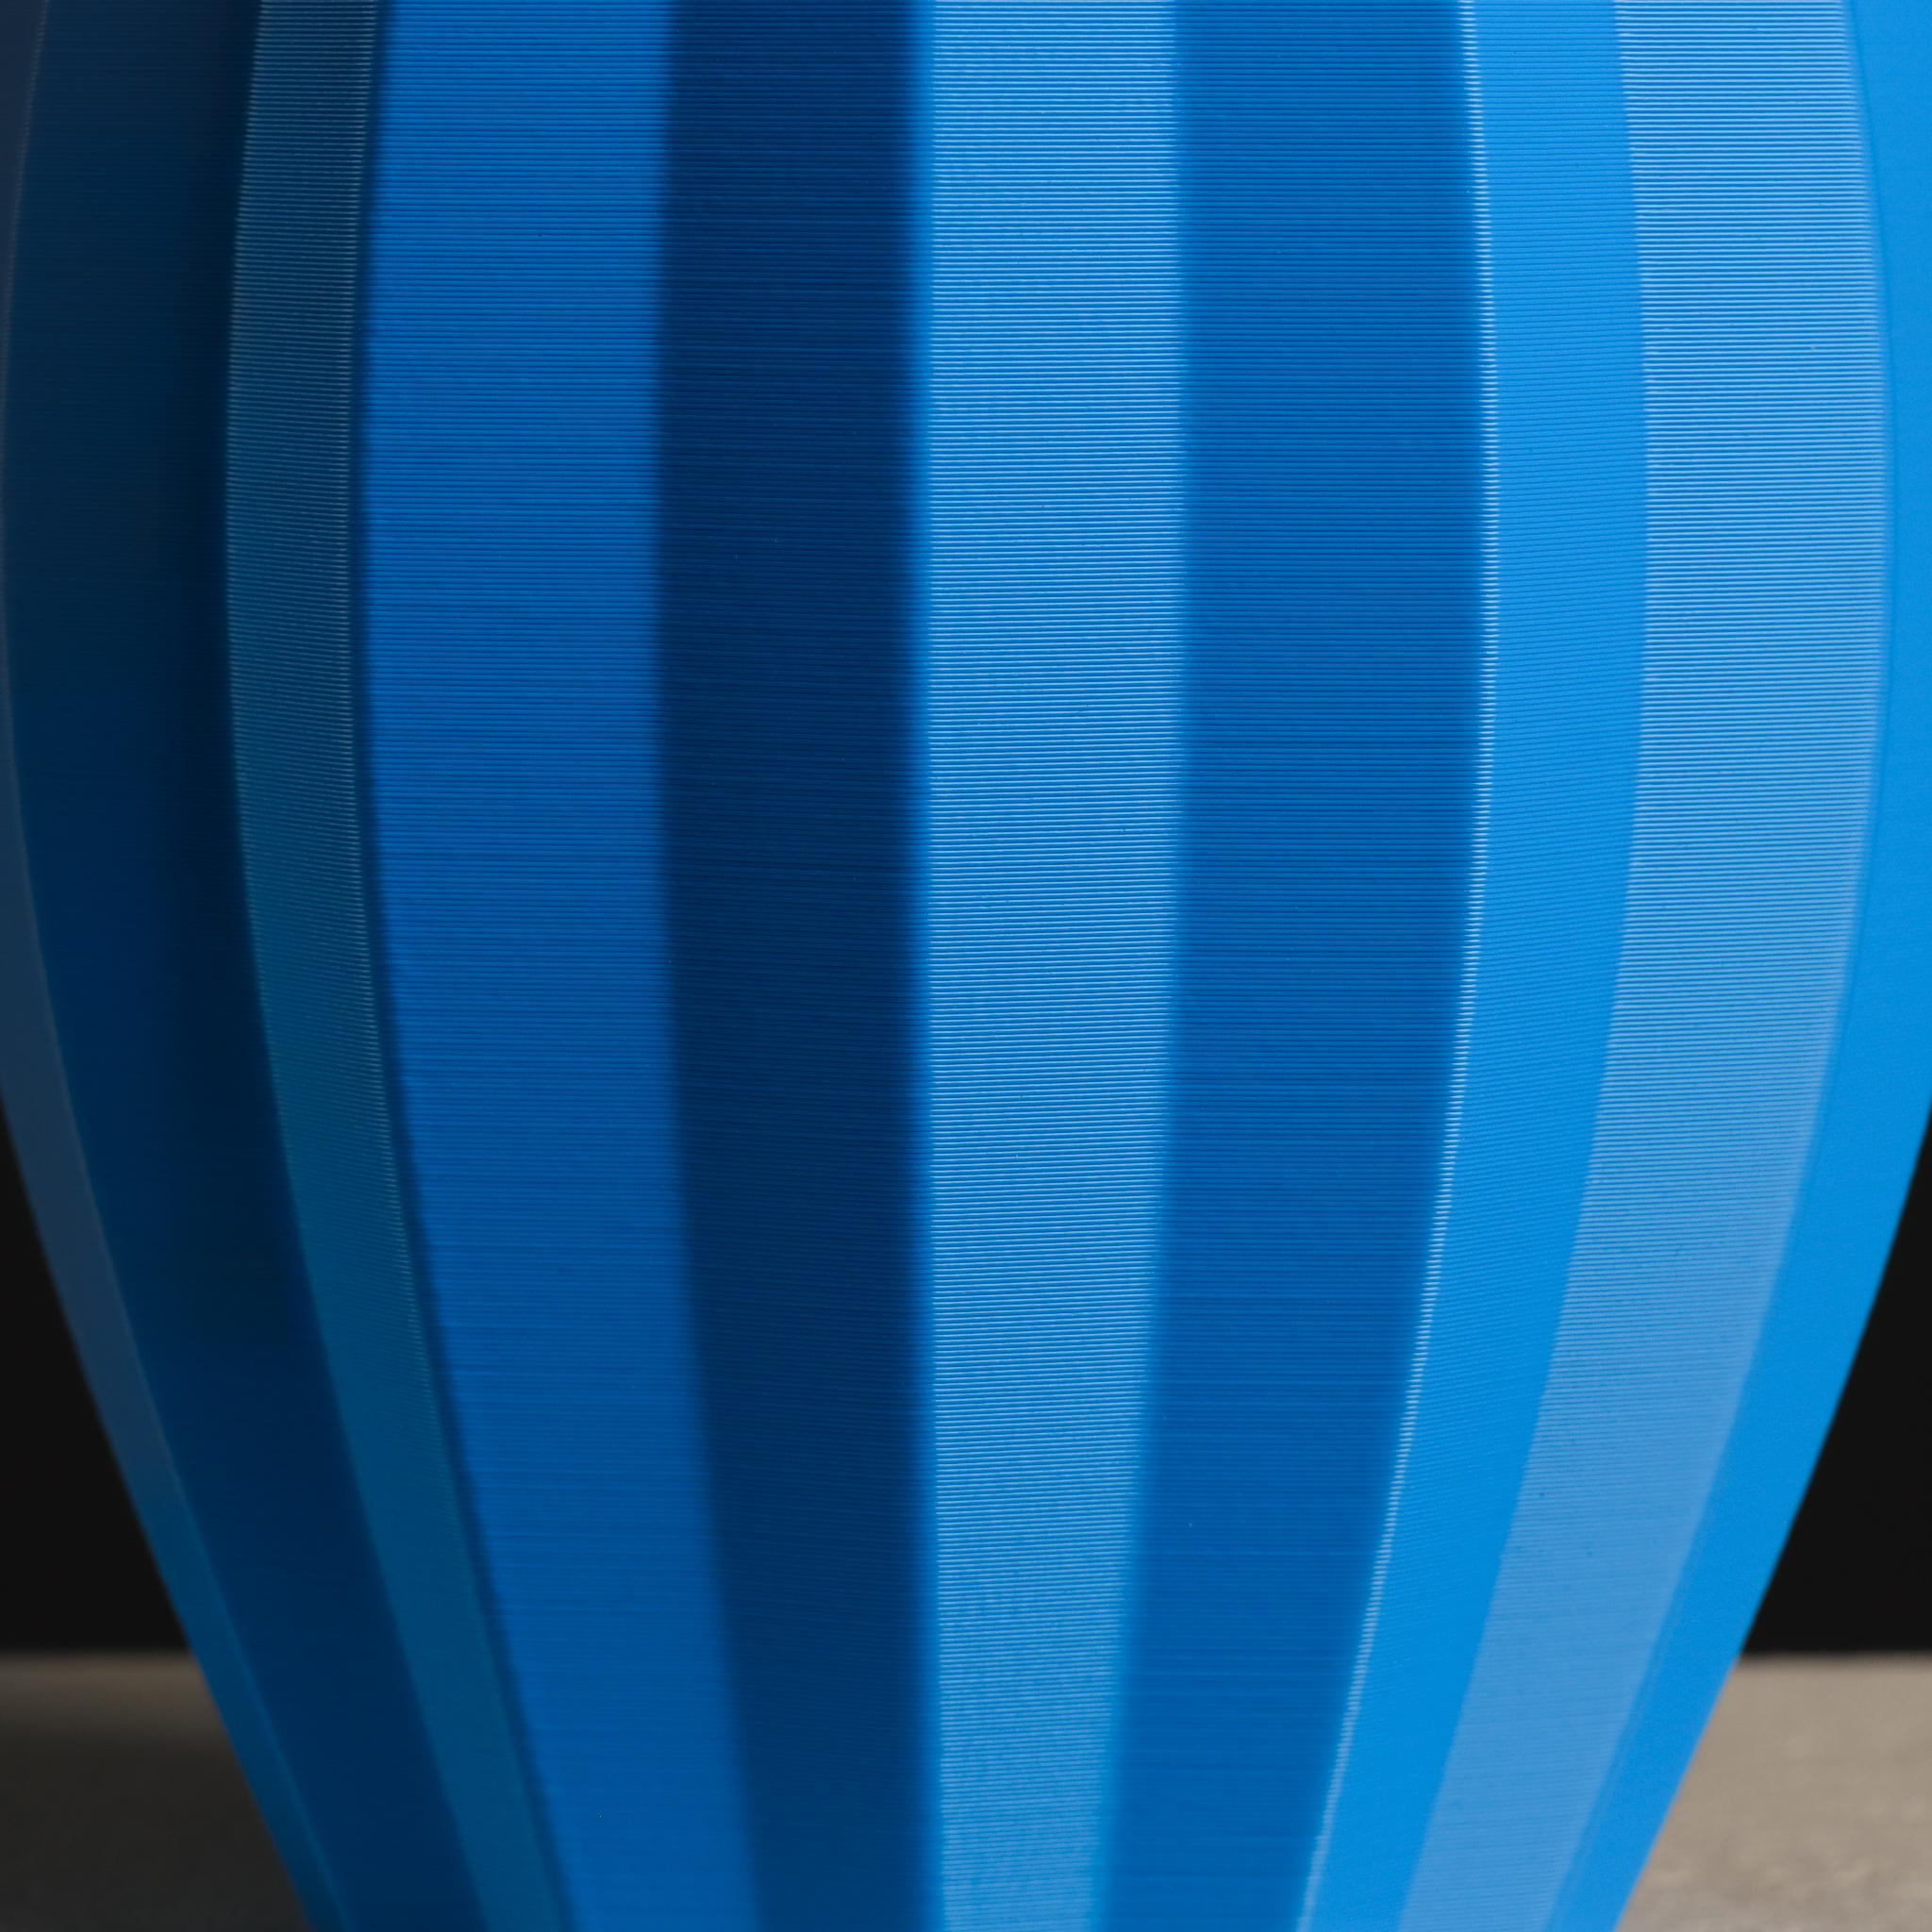  Ellipse Vase with Stripes  3d model